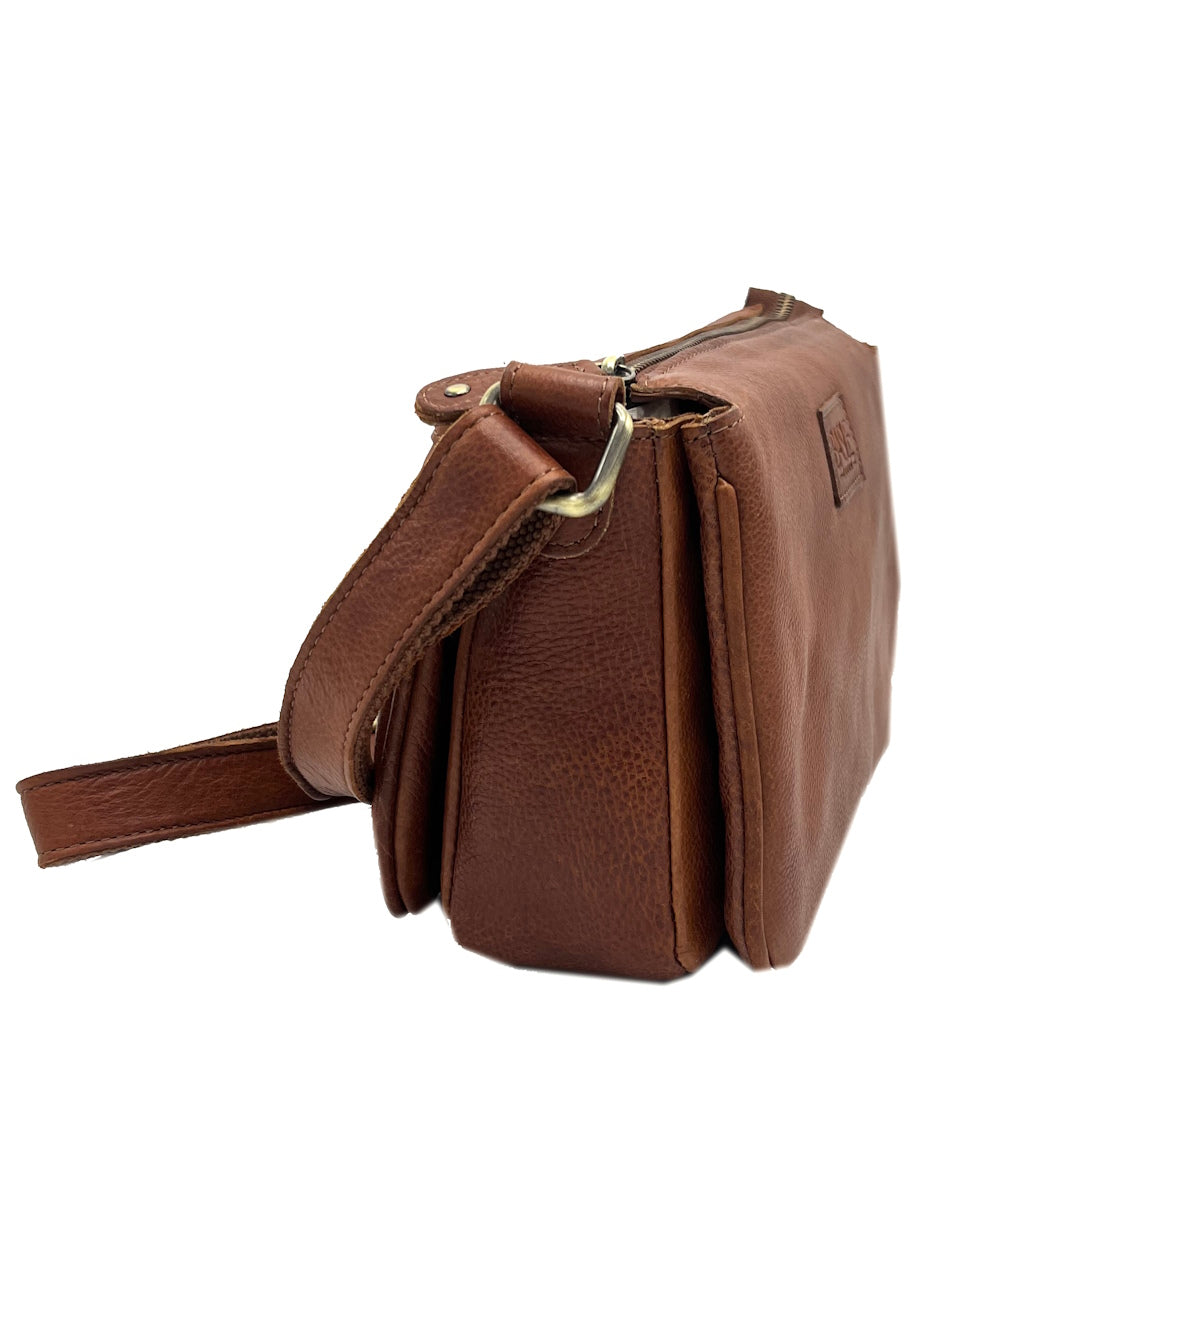 Genuine Leather shoulder bag, Brand Basile,  art. BA3664DX.392